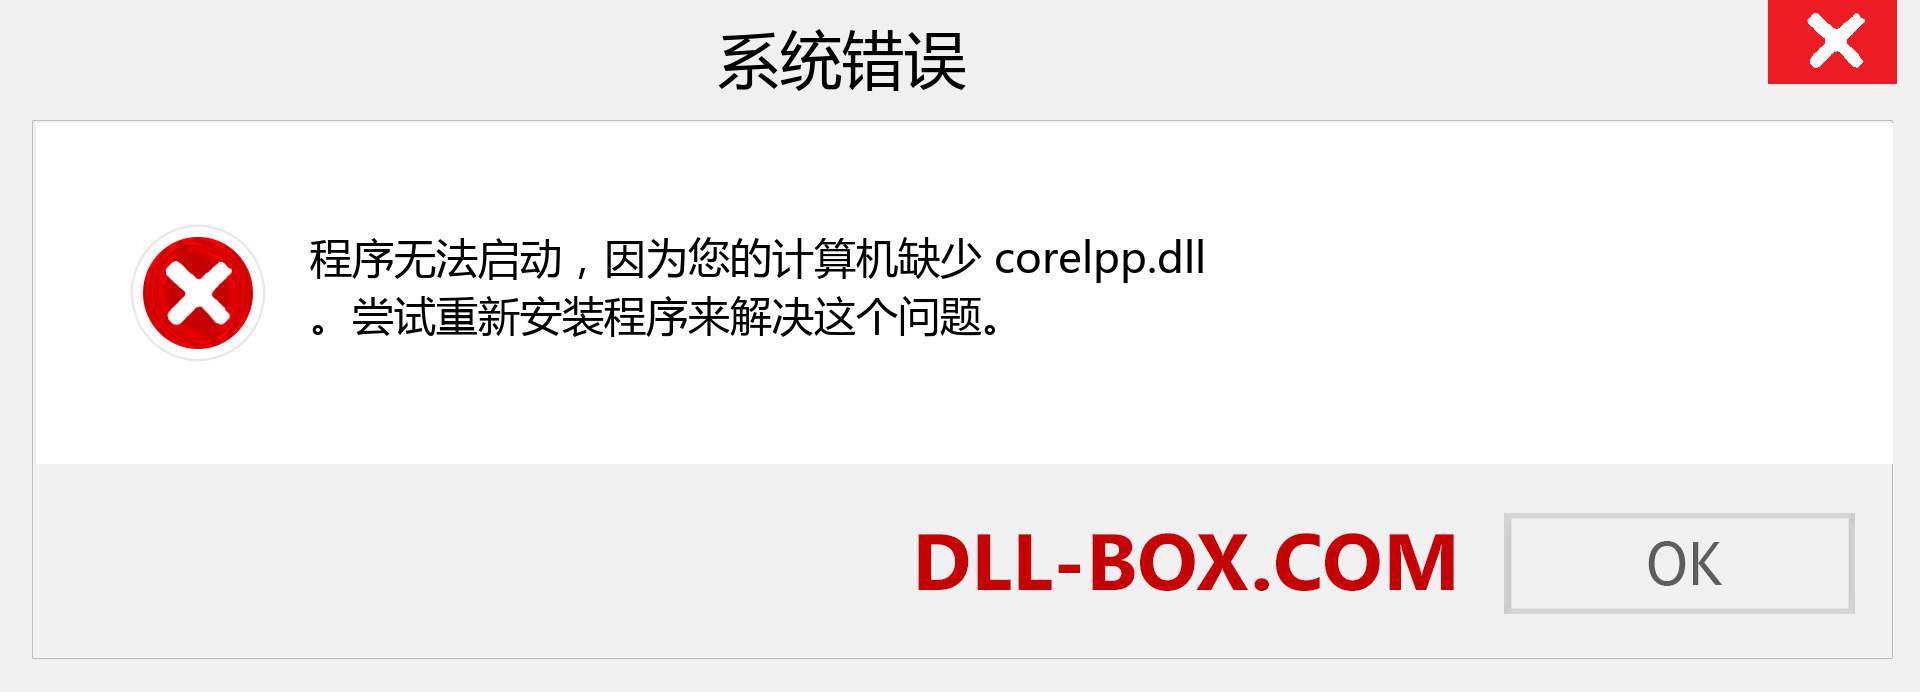 corelpp.dll 文件丢失？。 适用于 Windows 7、8、10 的下载 - 修复 Windows、照片、图像上的 corelpp dll 丢失错误